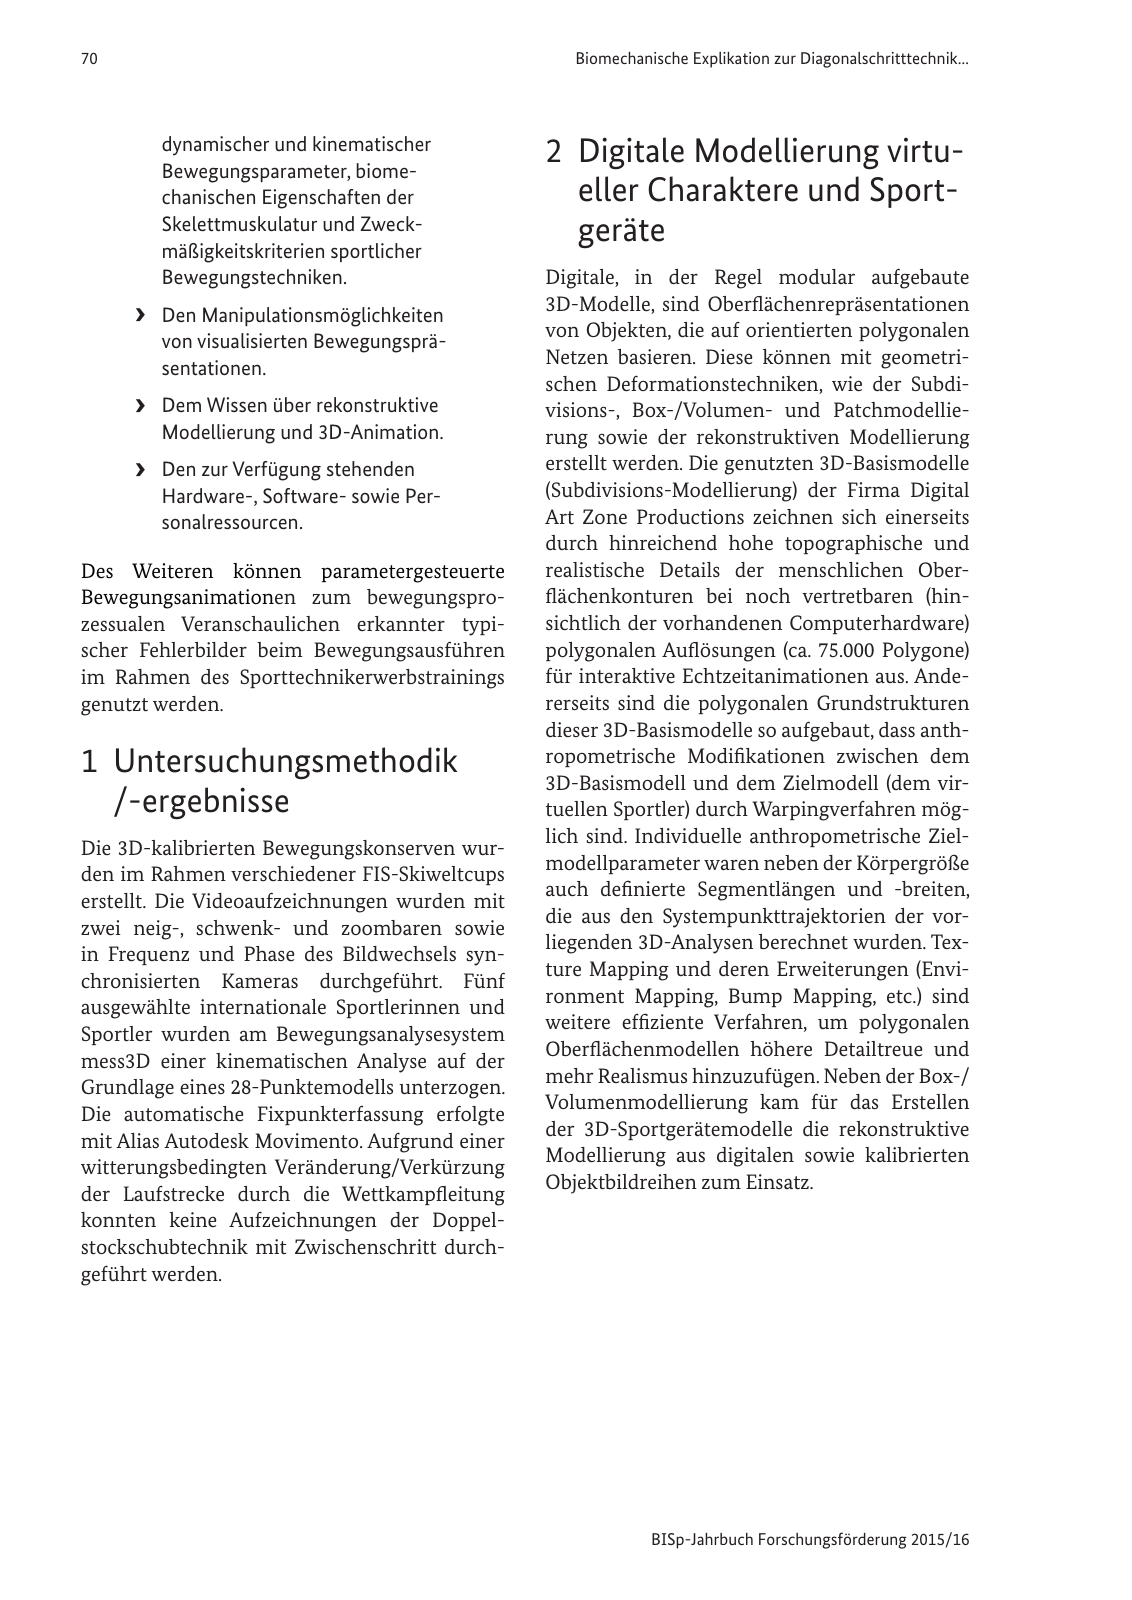 Vorschau BISp-Jahrbuch Forschungsförderung 2015/16 Seite 72